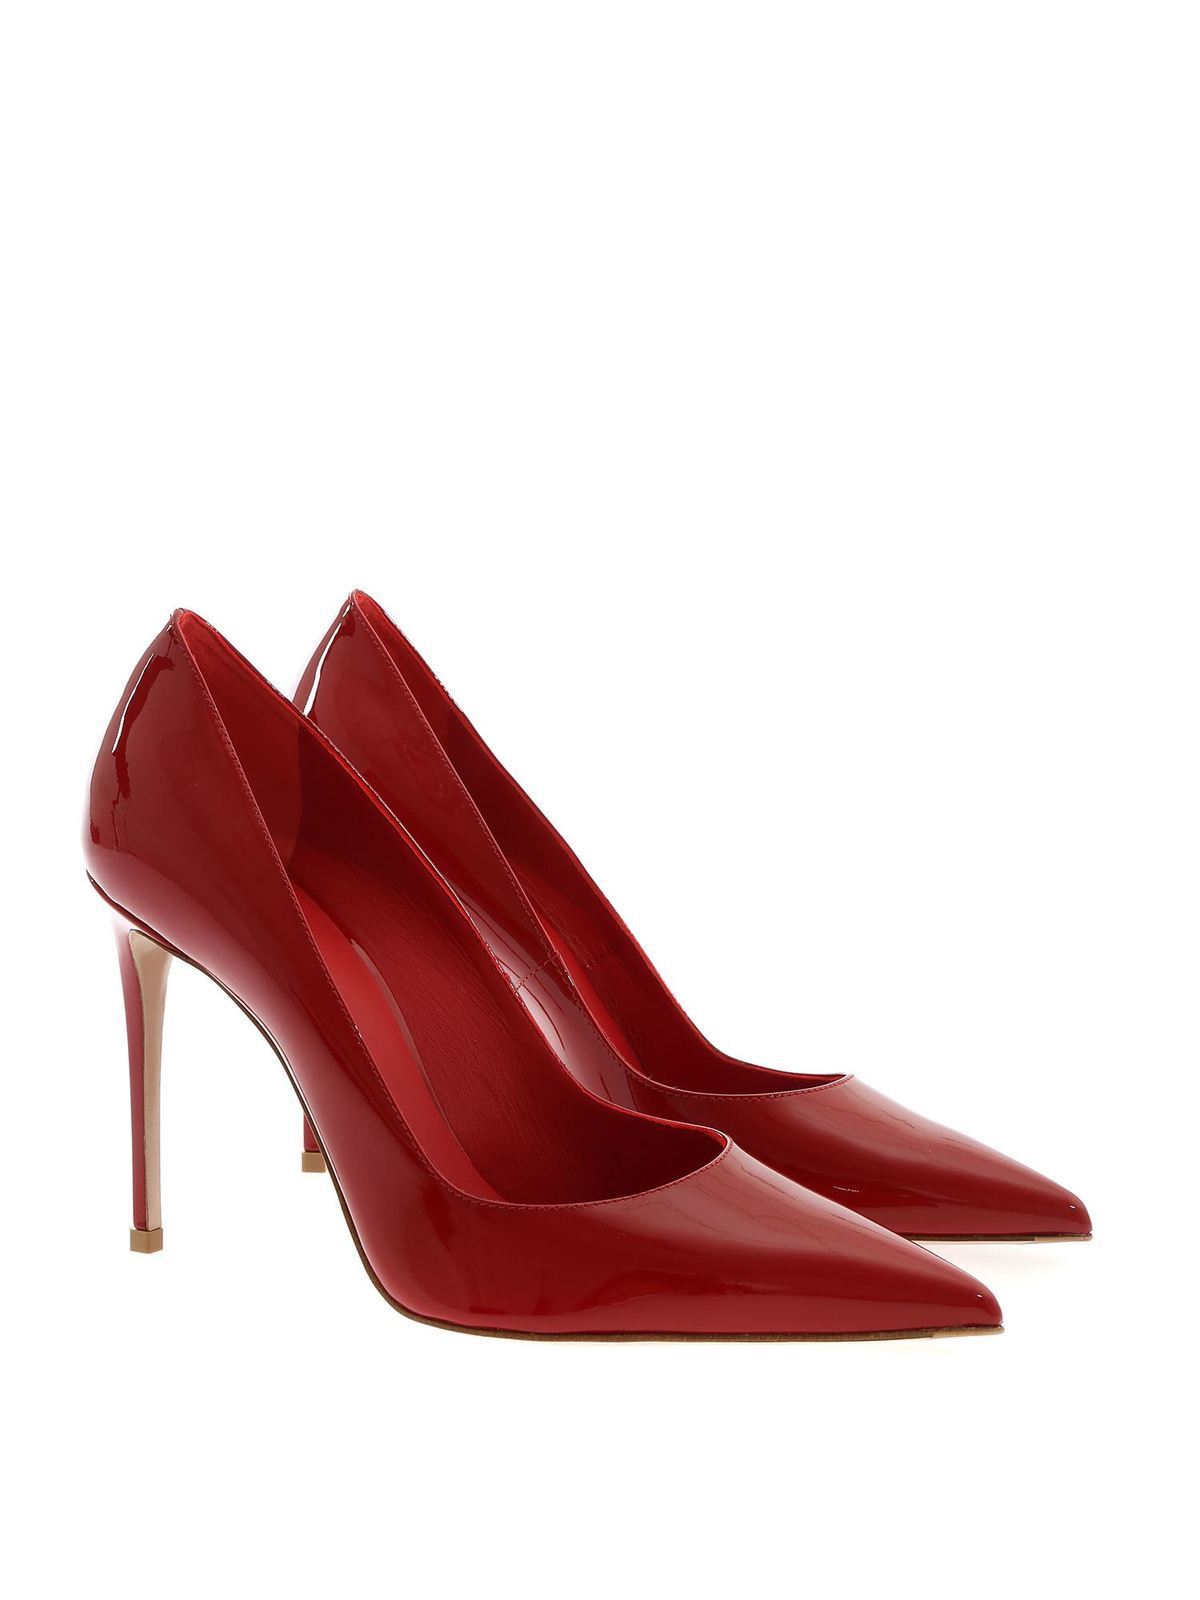 Respiración Cabaña cisne Zapatos de salón Le Silla - Zapatos De Salón - Rojo - 2101M090ROSSO